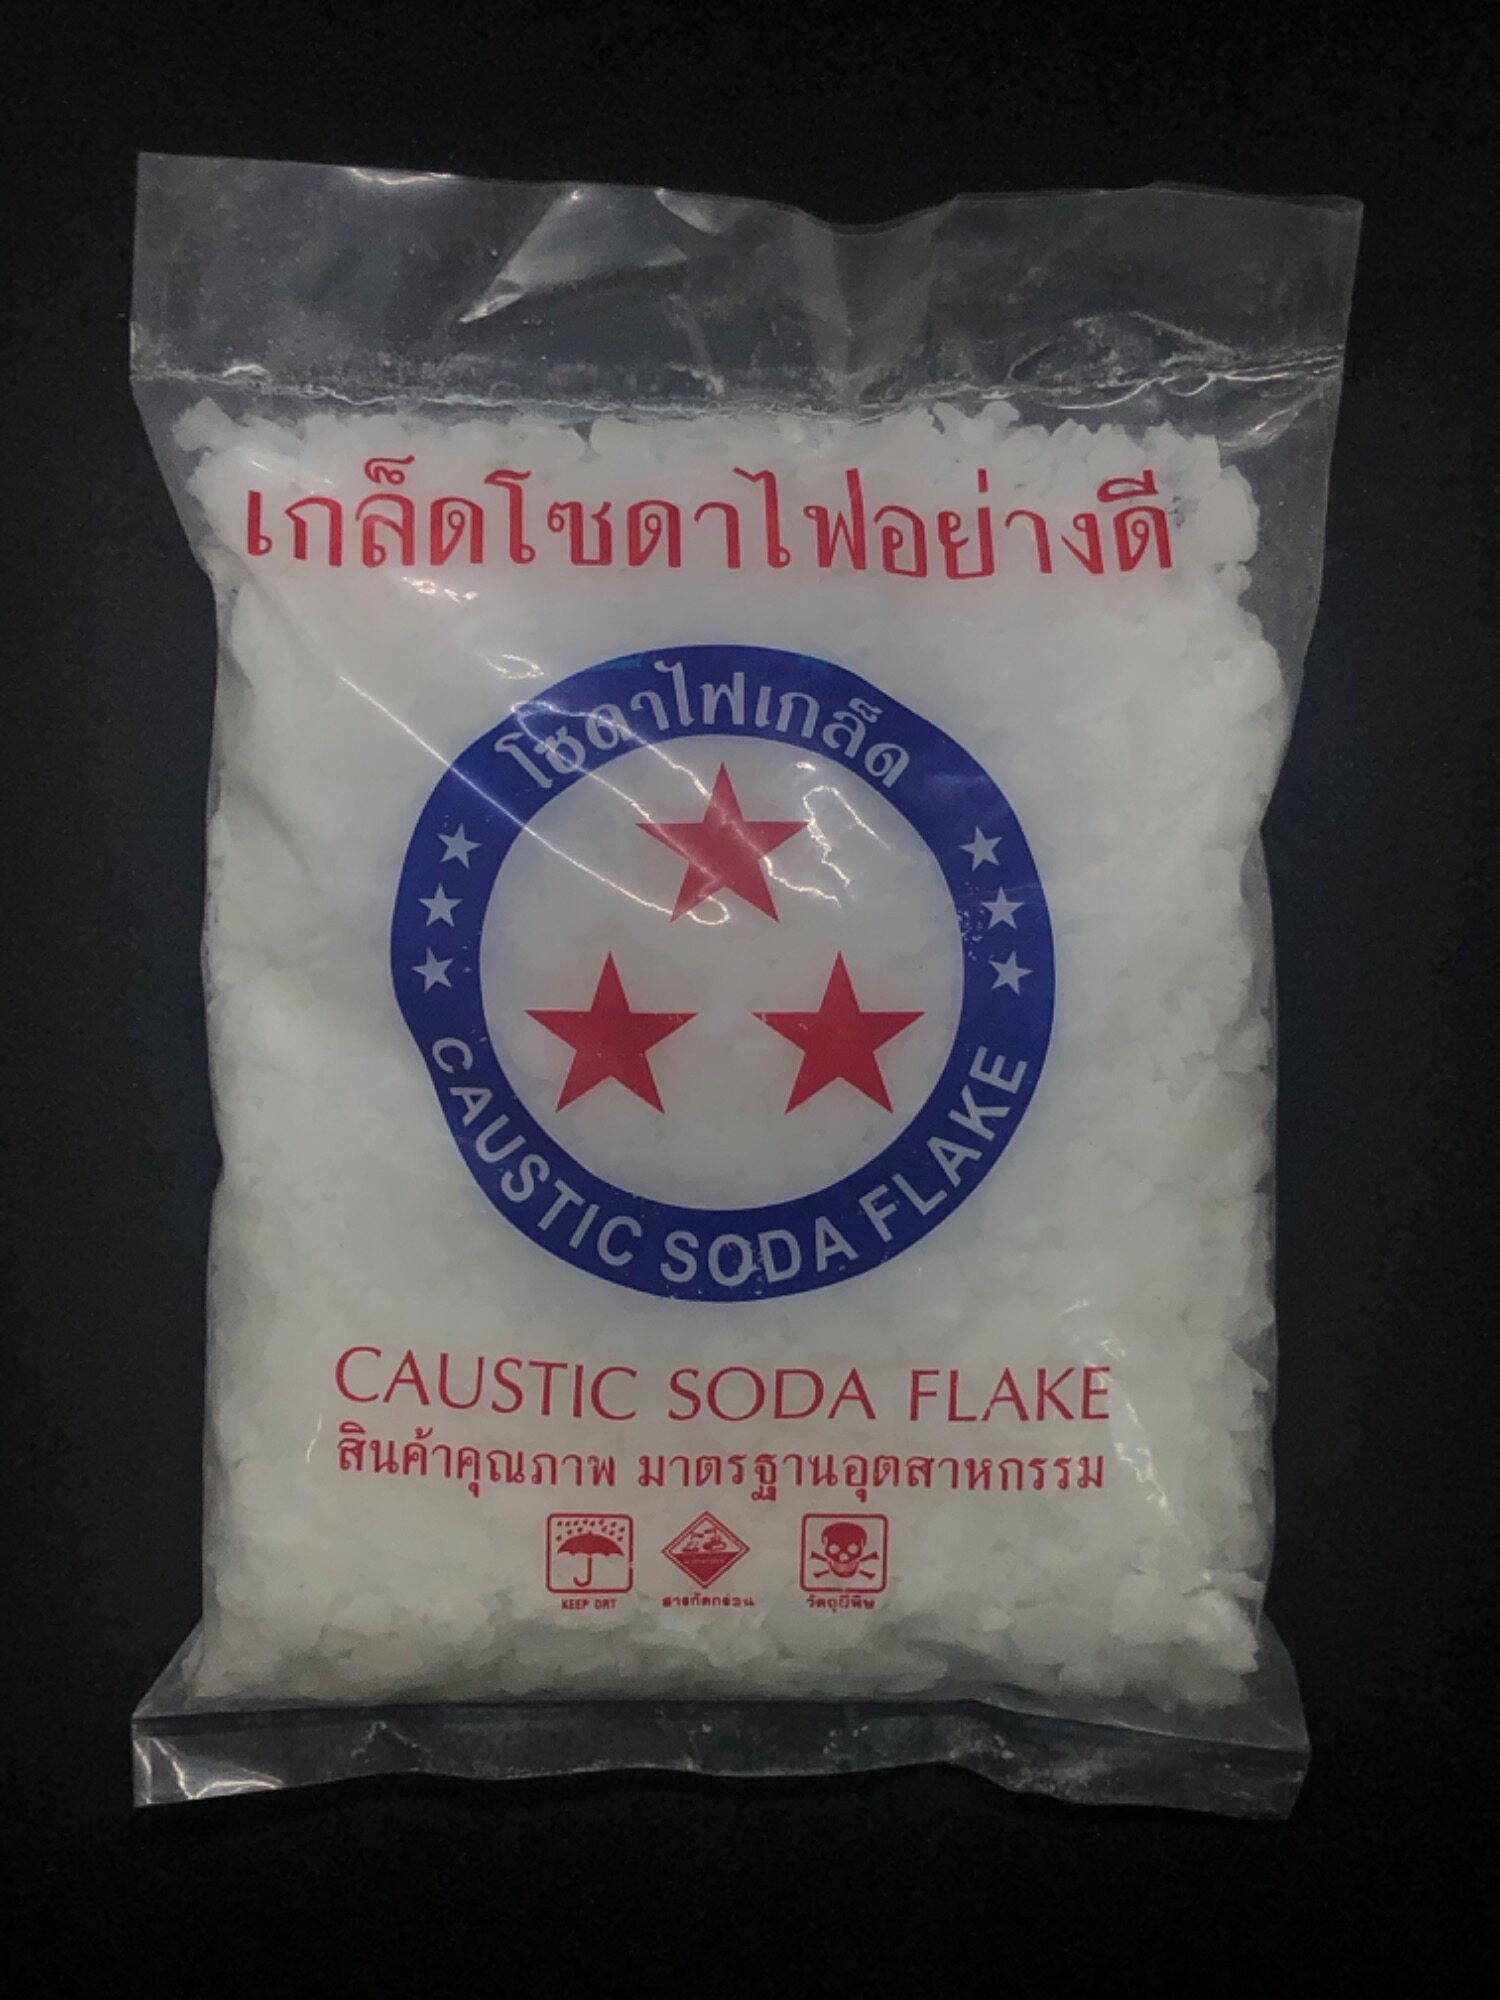 โซดาไฟ โซดาไฟเกล็ดอย่างดี caustic soda flake (starbright)